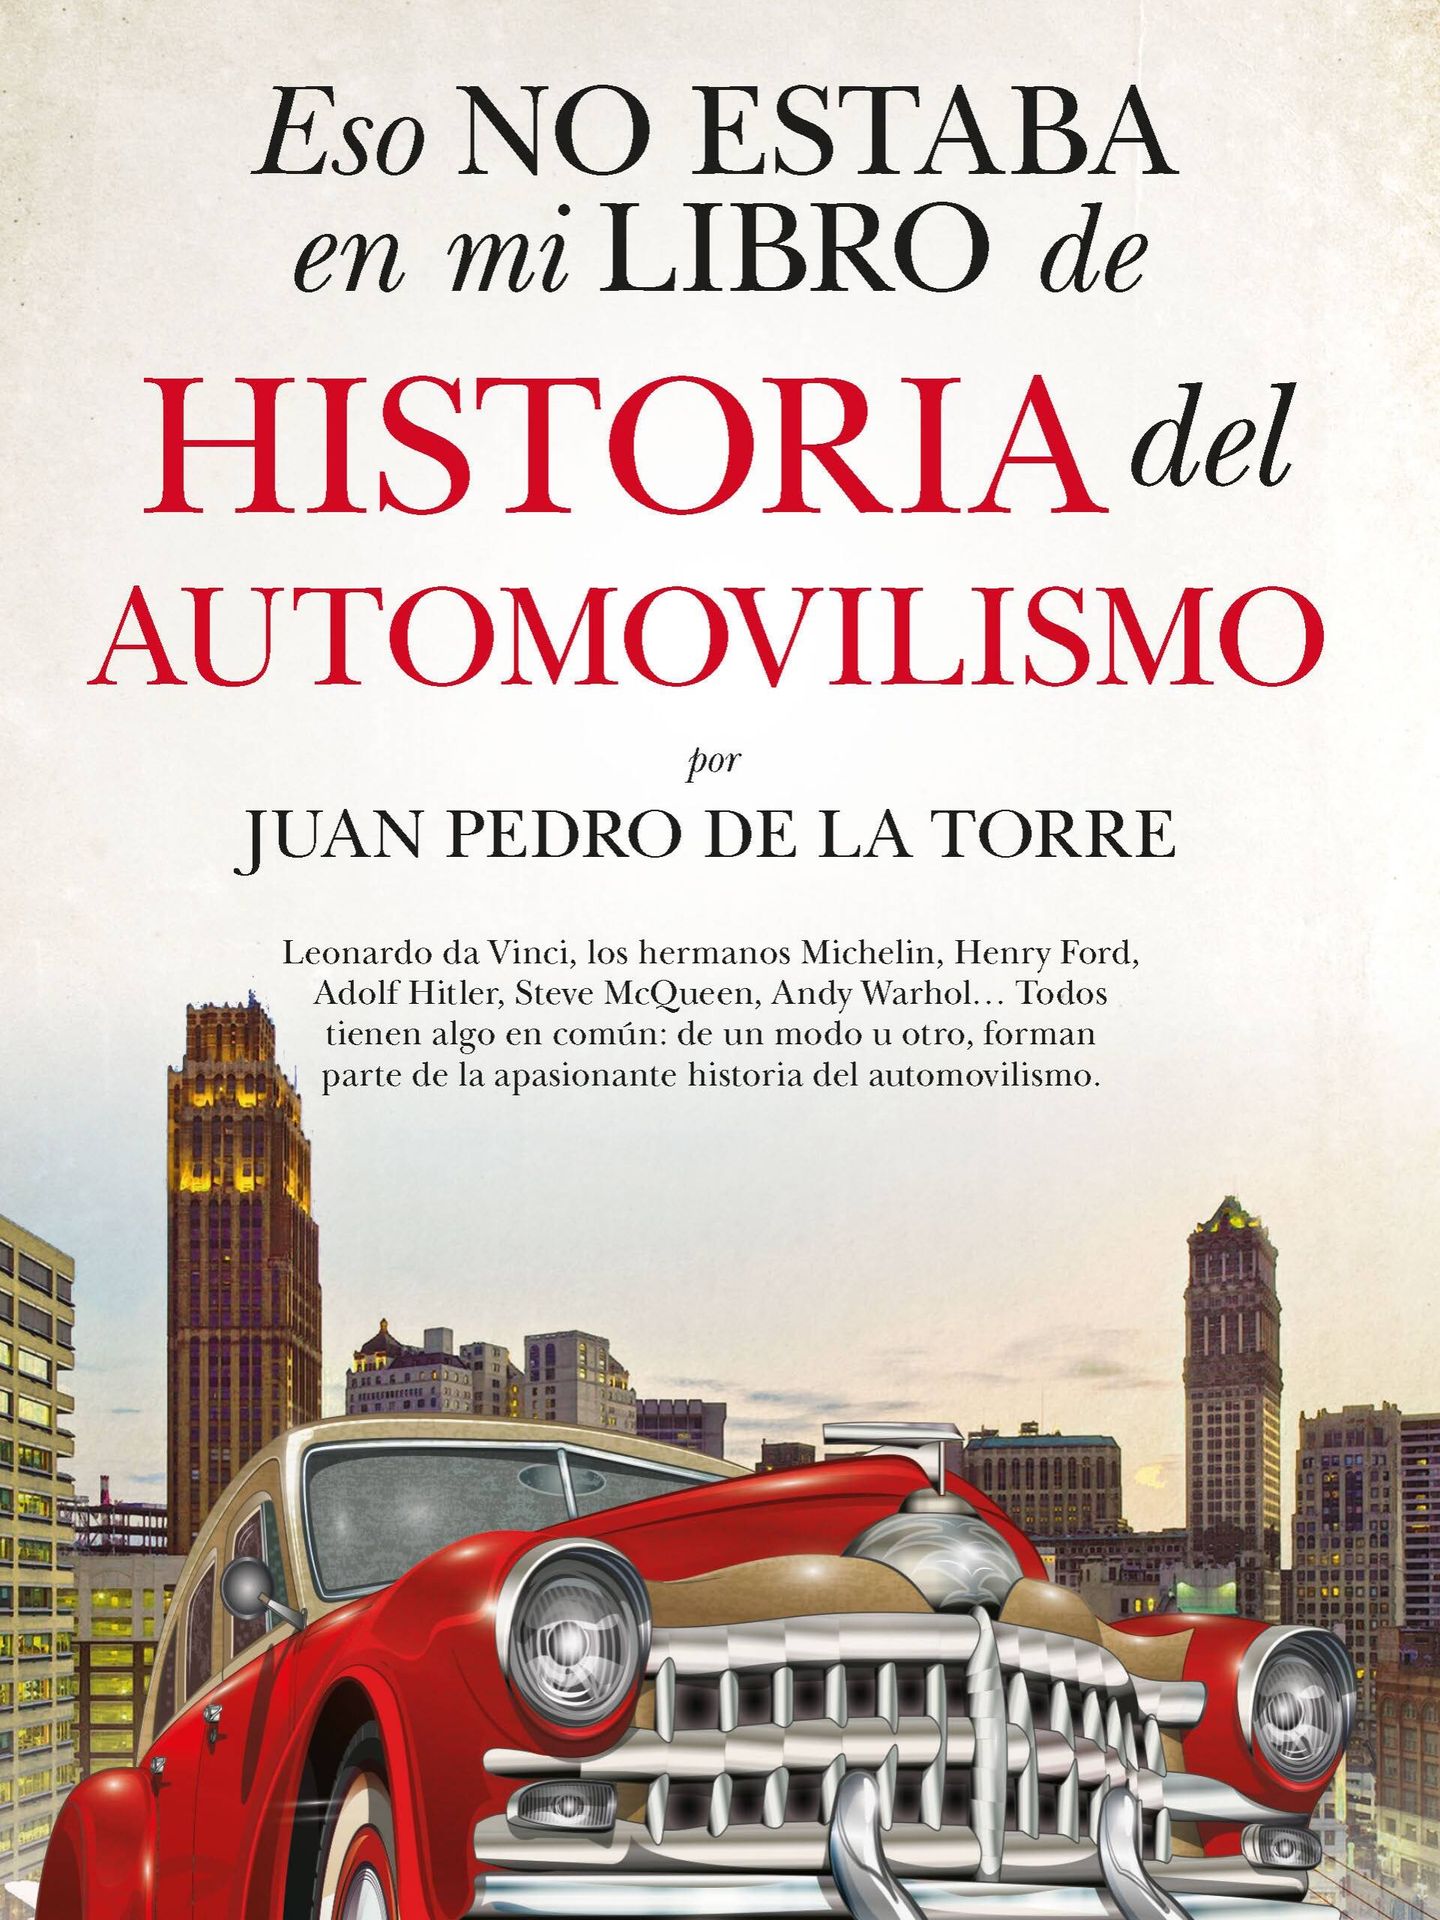 'Eso no estaba en mi libro de historia del automovilismo' es un libro ilustrado y de 368 páginas escrito por nuestro colaborador Juan Pedro de la Torre y publicado por Editorial Almuzara.